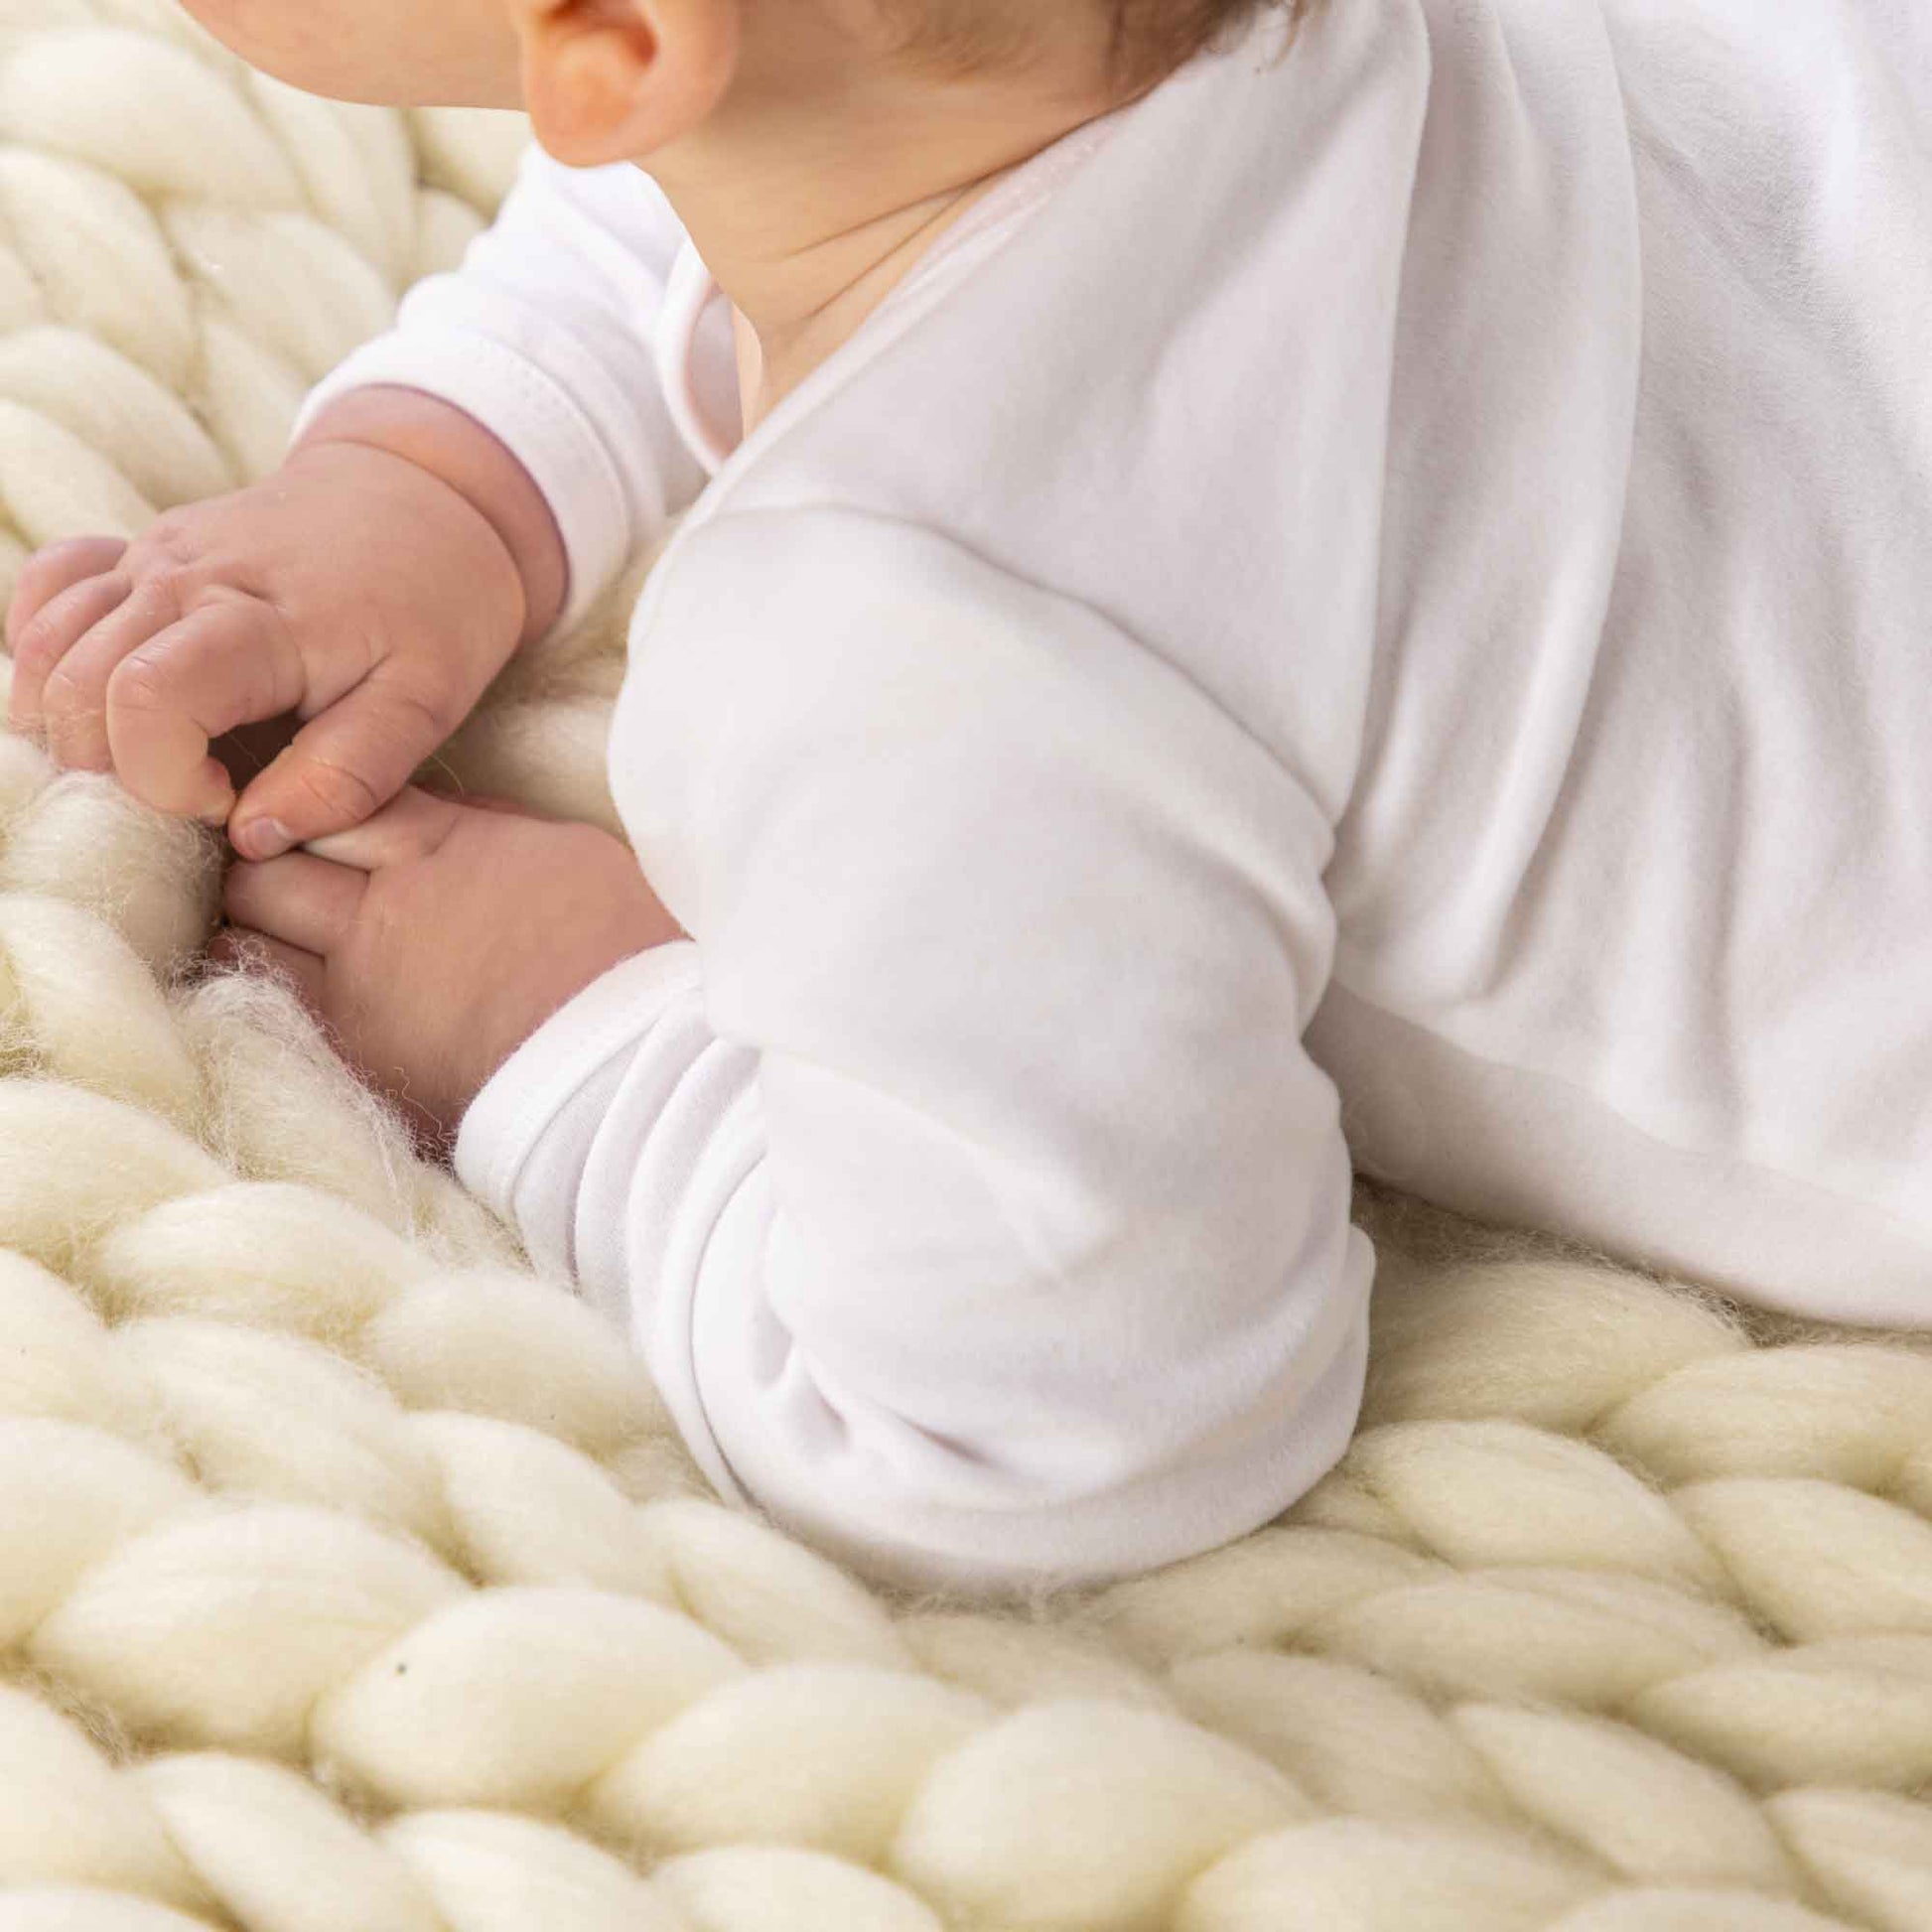 Longsleeve white baby bodysuit vest